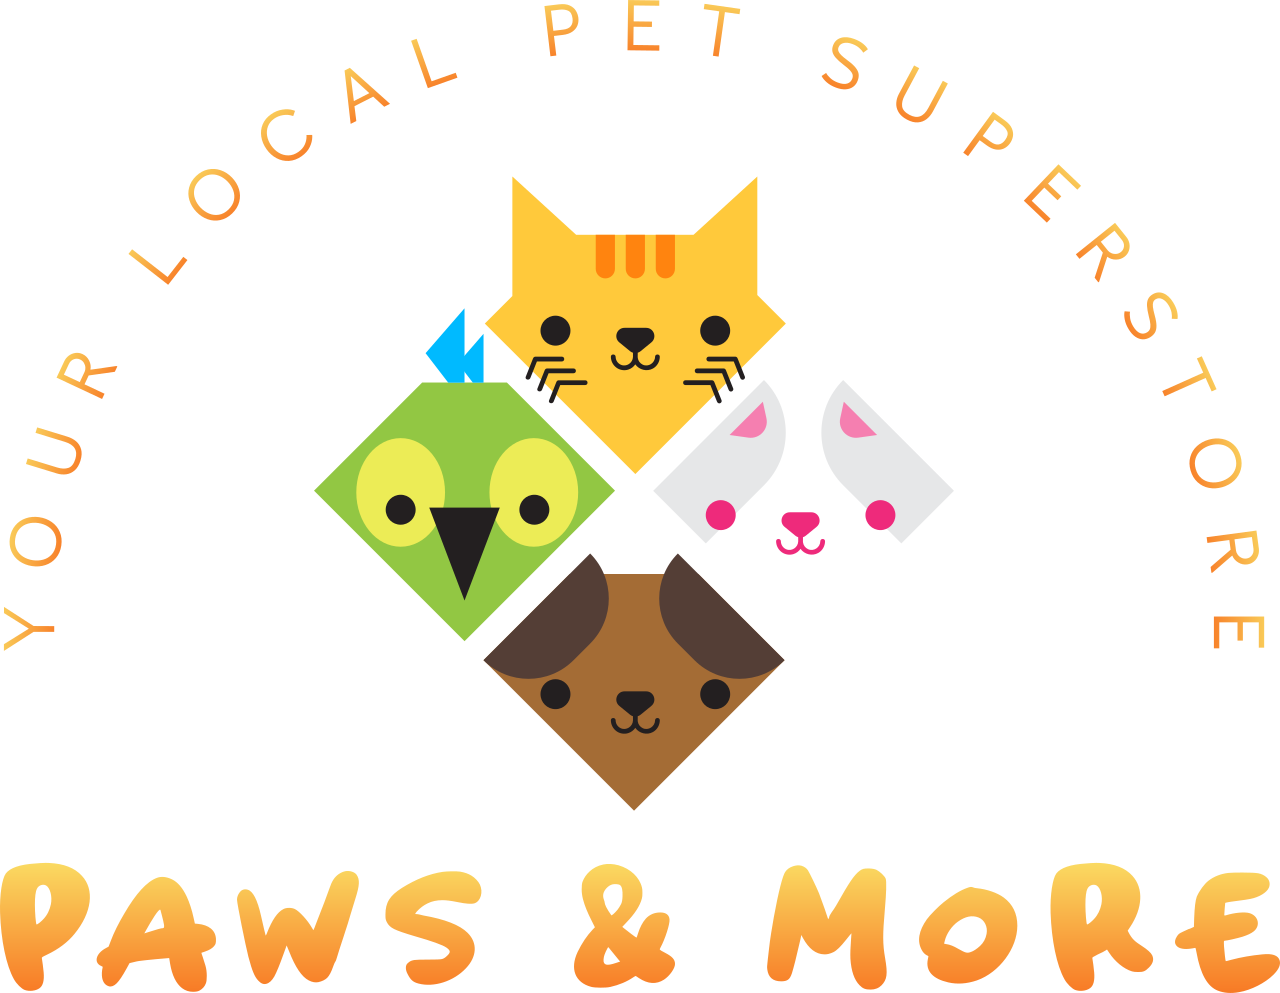 Paws & More's logo